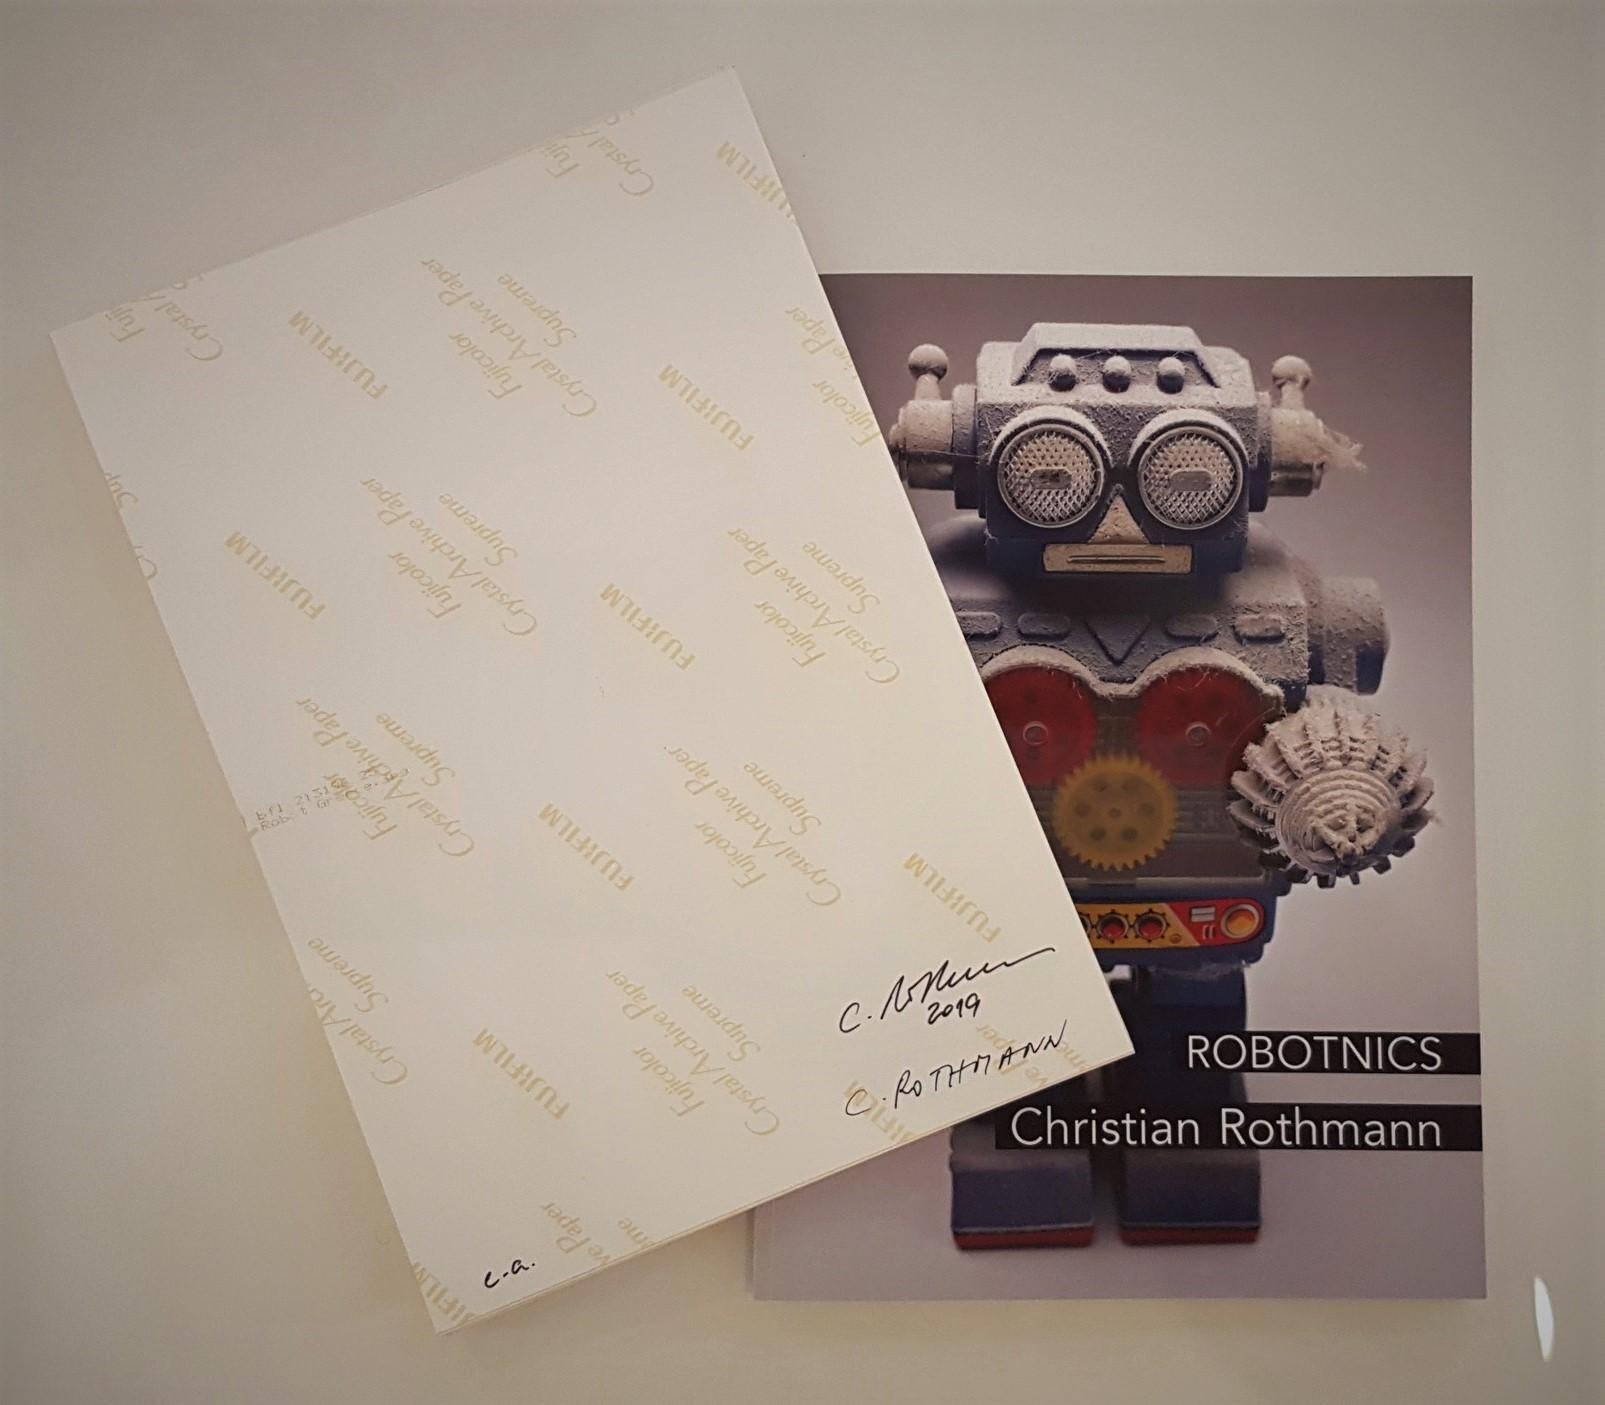 Christian Rothmann
Série ROBOTNICS
C-Print
2019
Edition S (Edition de 10)
12 x 8.3 pouces (30.5 x 21 cm)
Signé, daté et numéroté au verso


Autres tailles d'édition disponibles :
- Edition M (Edition de 6)  35.4 x 23.6 pouces (90 x 60 cm)
- Edition